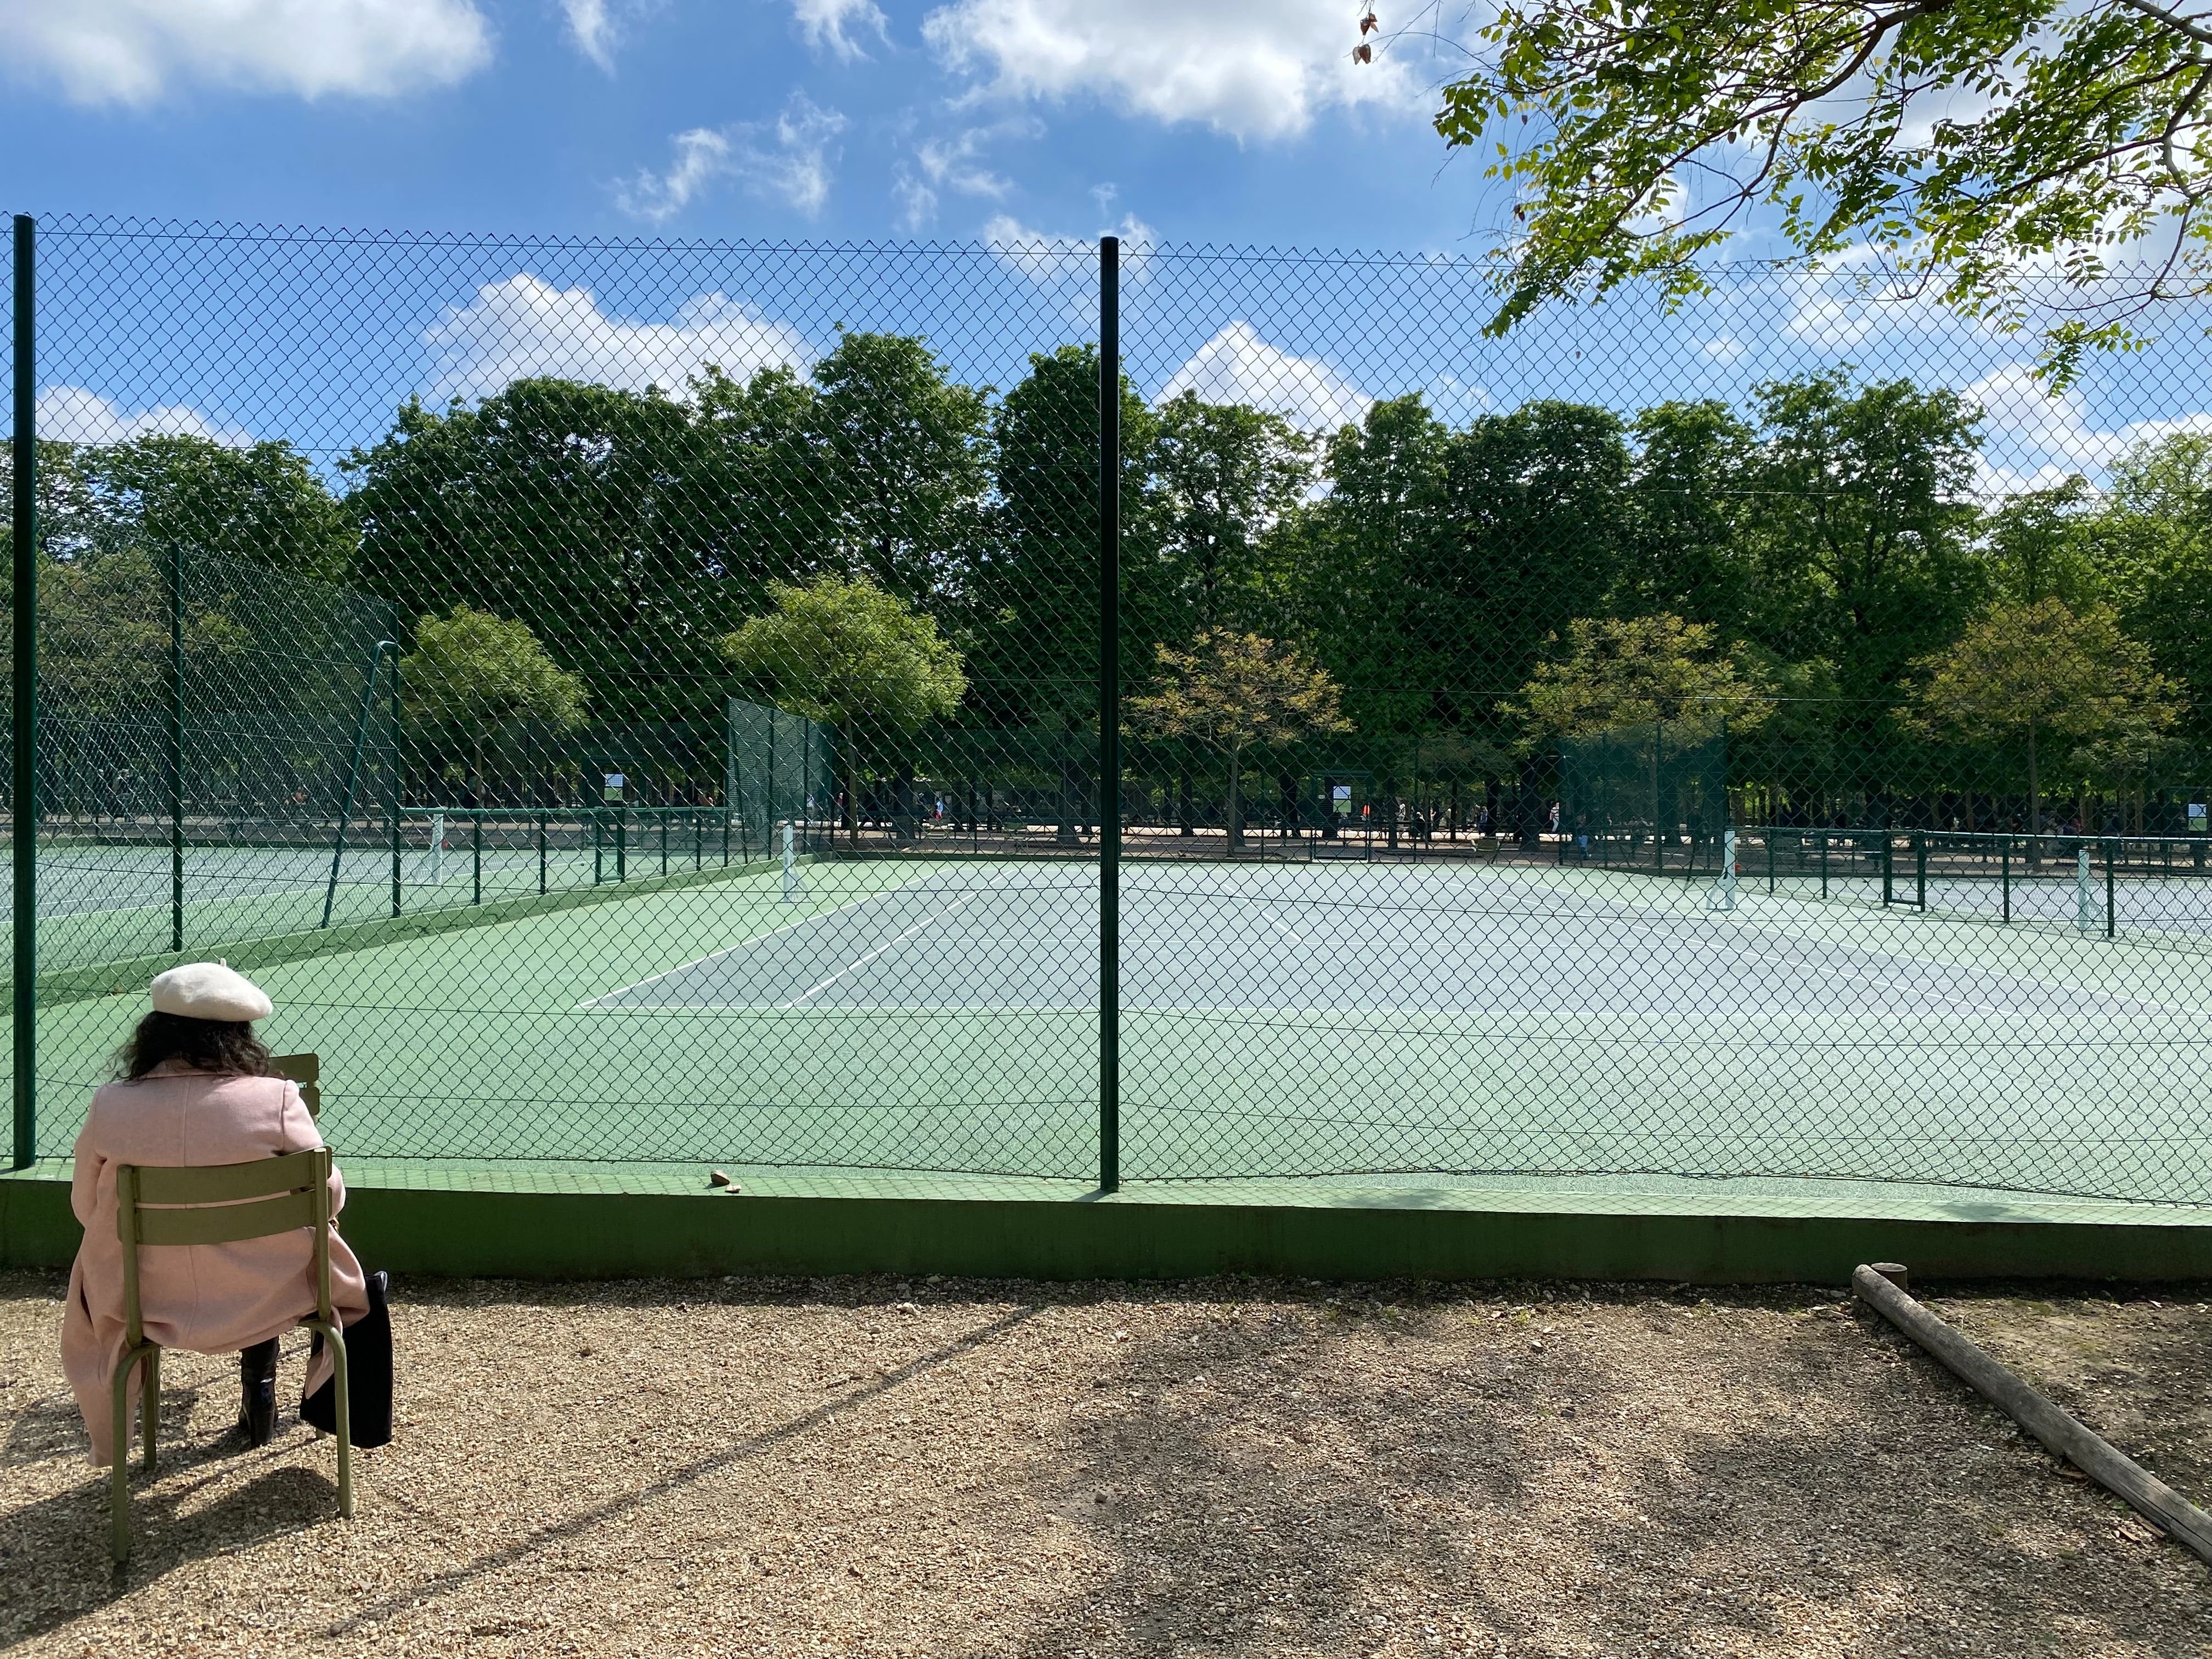 Paris (VIe), mardi 2 mai. Les six terrains de tennis du jardin du Luxembourg sont fermés depuis le 1er mars en attendant les résultats d'un recours contre l'appel d'offres lancé par le Sénat. LP/A.C.